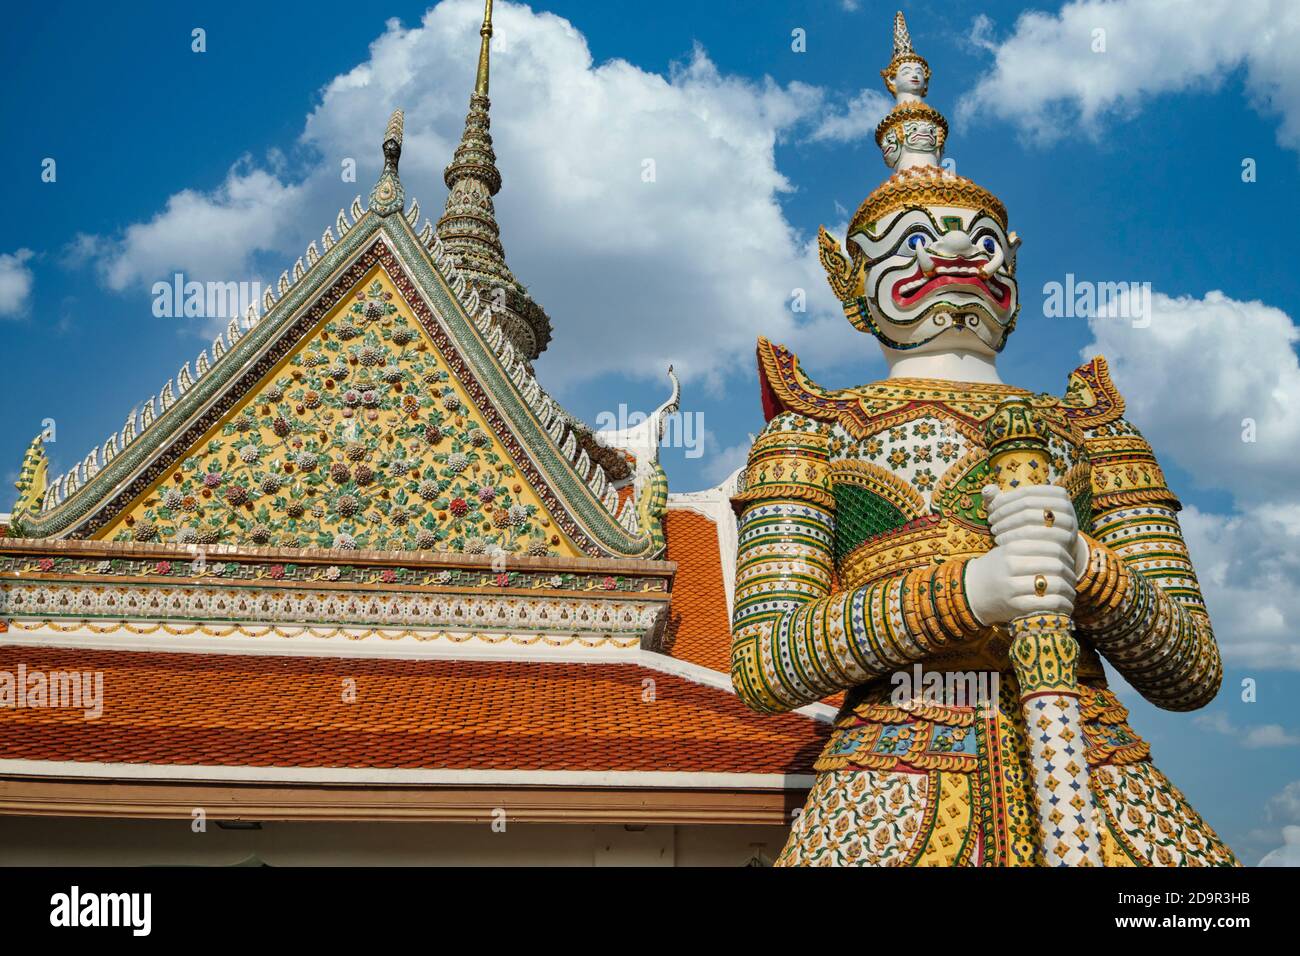 La figure féroce d'un yak (yaksha), un gardien de temple de type démon dans le domaine de Wat po à Bangkok, en Thaïlande Banque D'Images